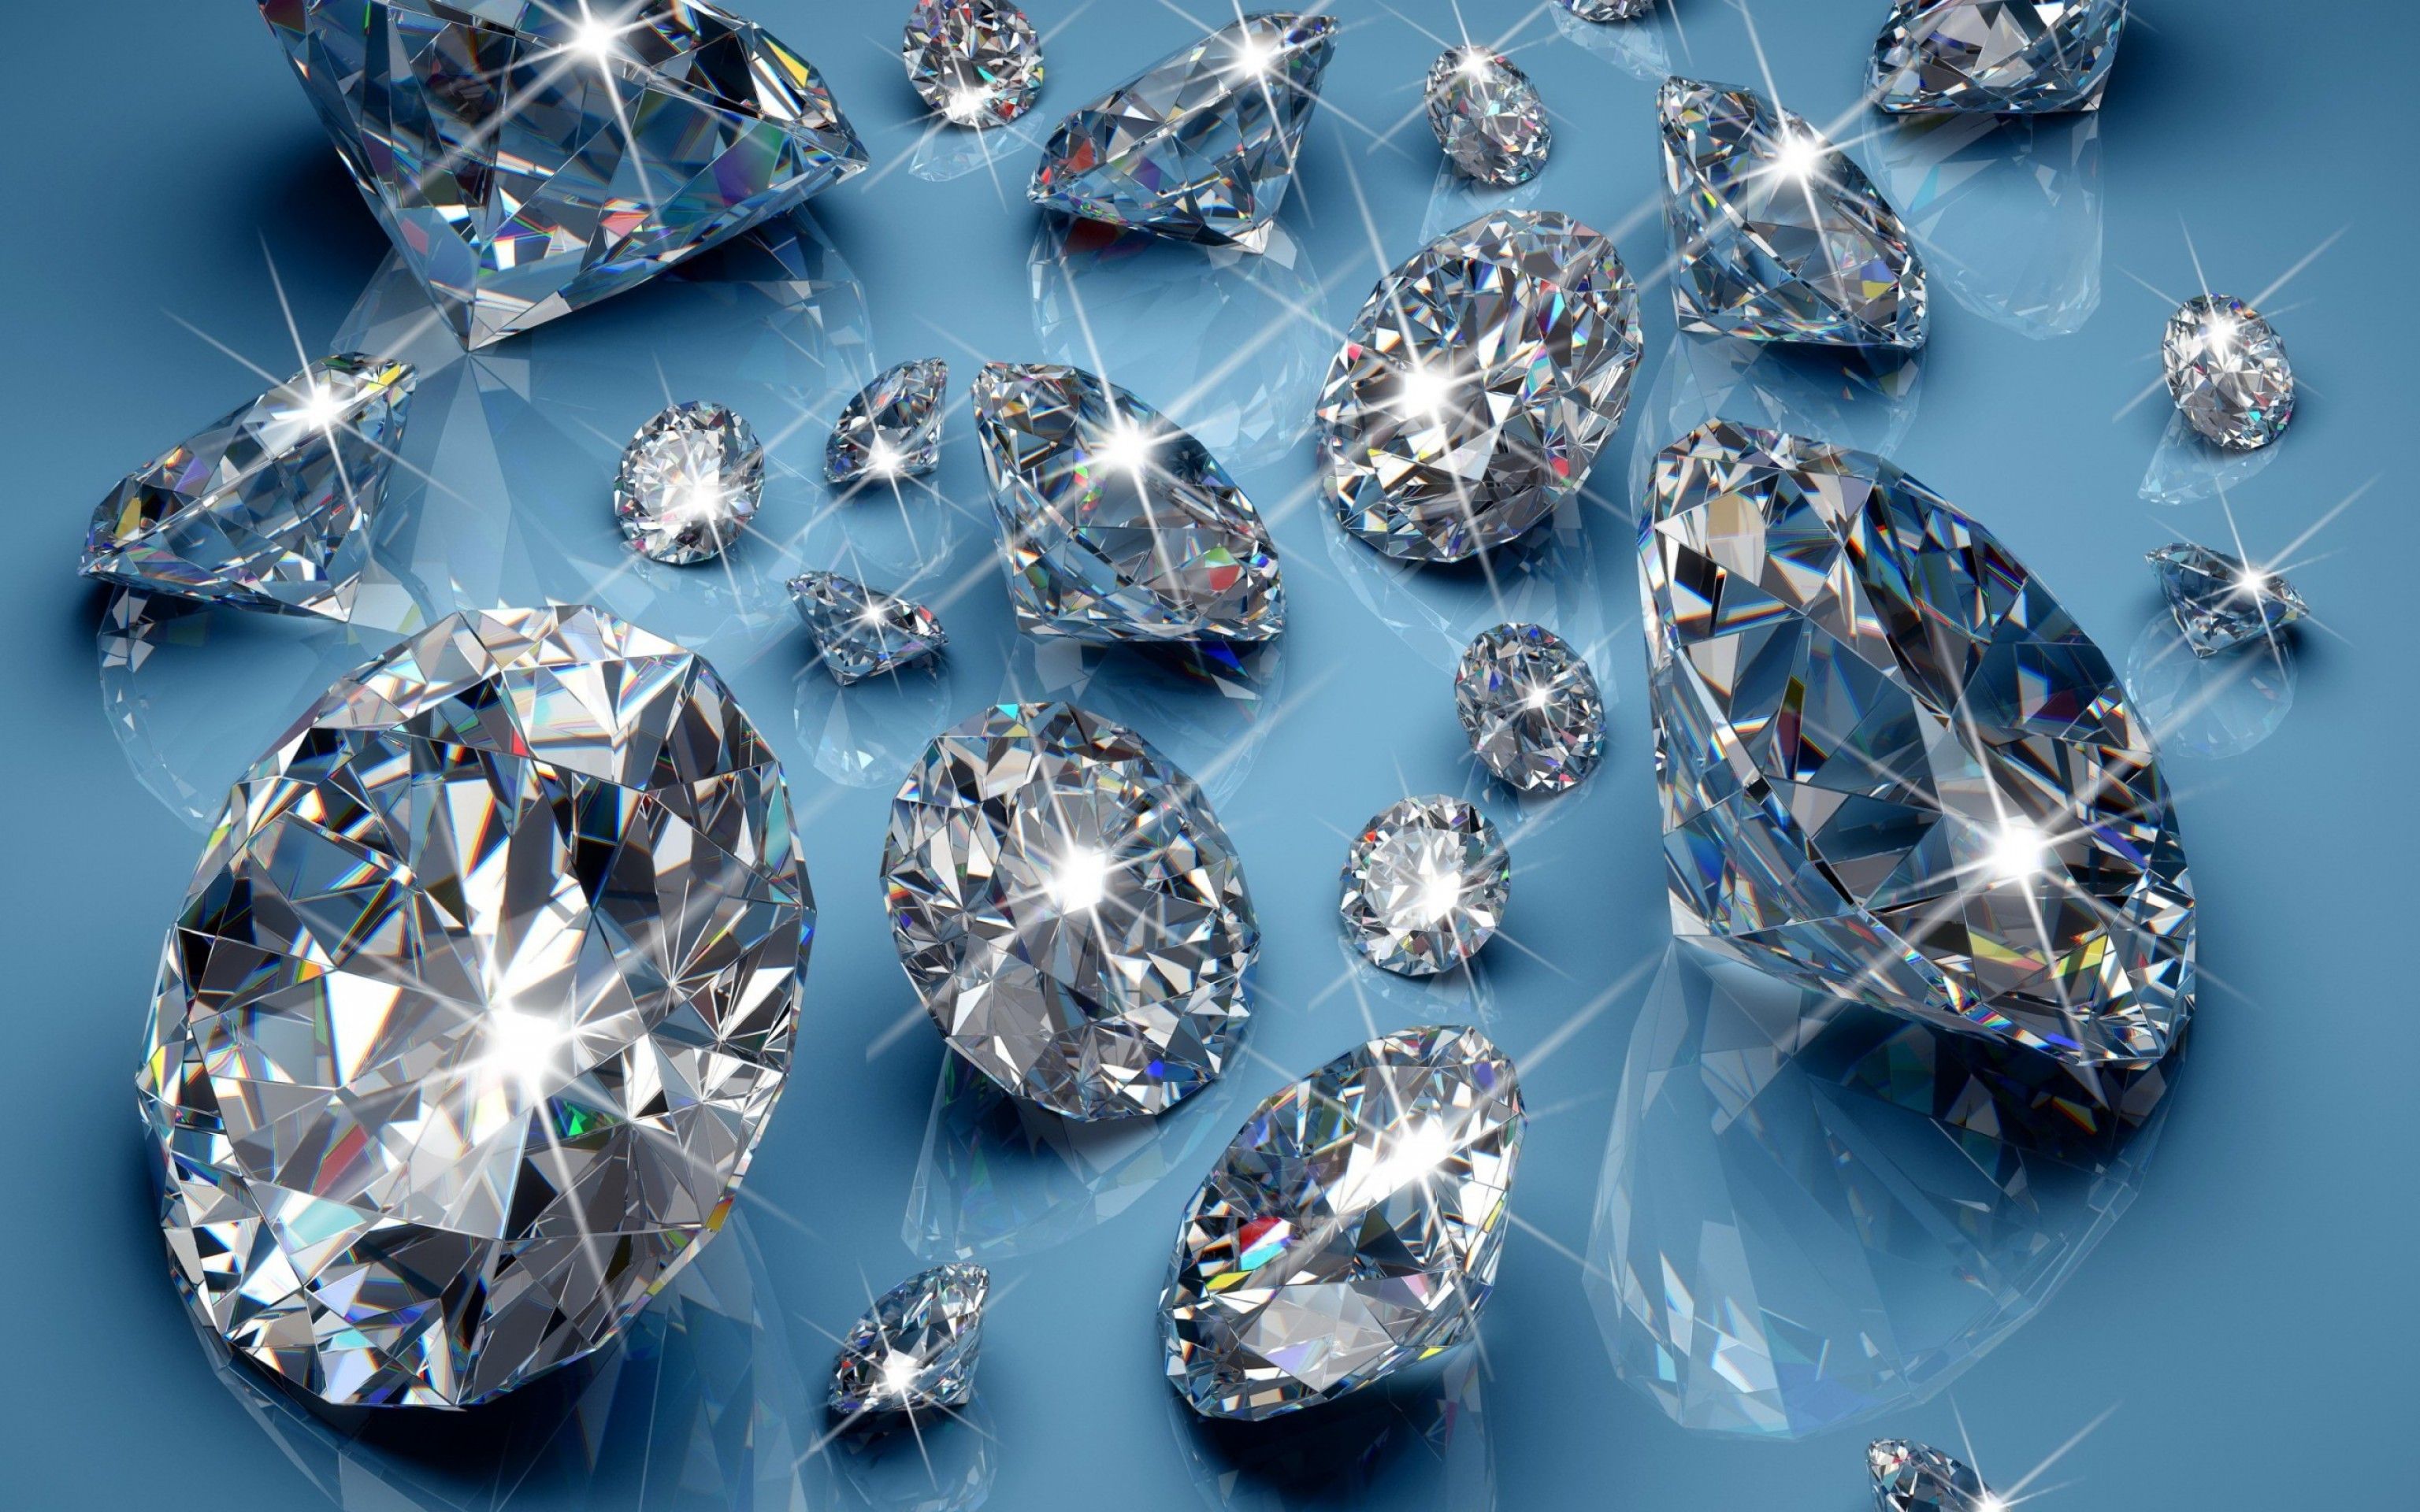 Fondos de diamantes - Los mejores fondos de diamantes gratis - WallpaperAccess